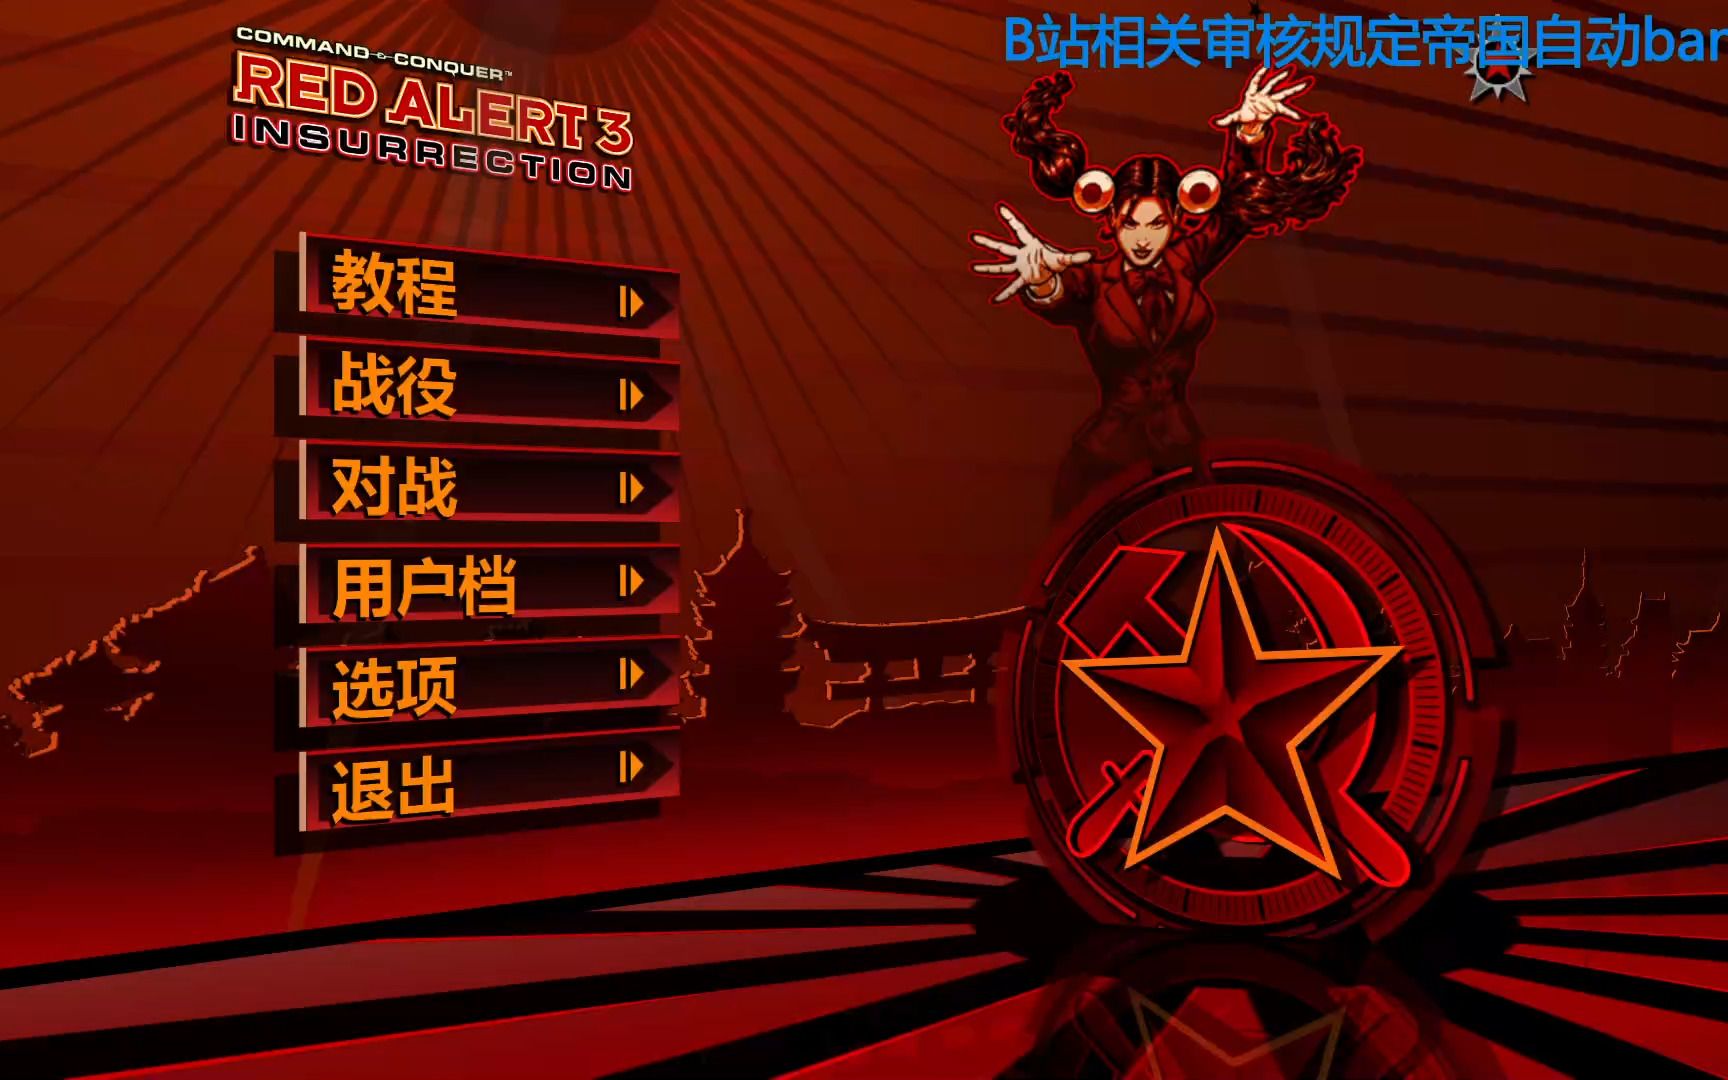 PS3要换新装啦 《红色警戒3》PS3专用壁纸 - 火星游戏 | 火星网－中国领先的数字艺术门户